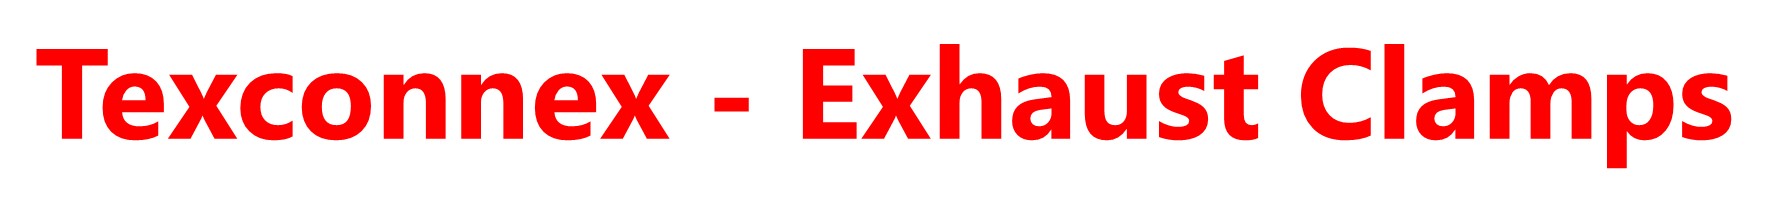 Texconnex - Exhaust Clamps